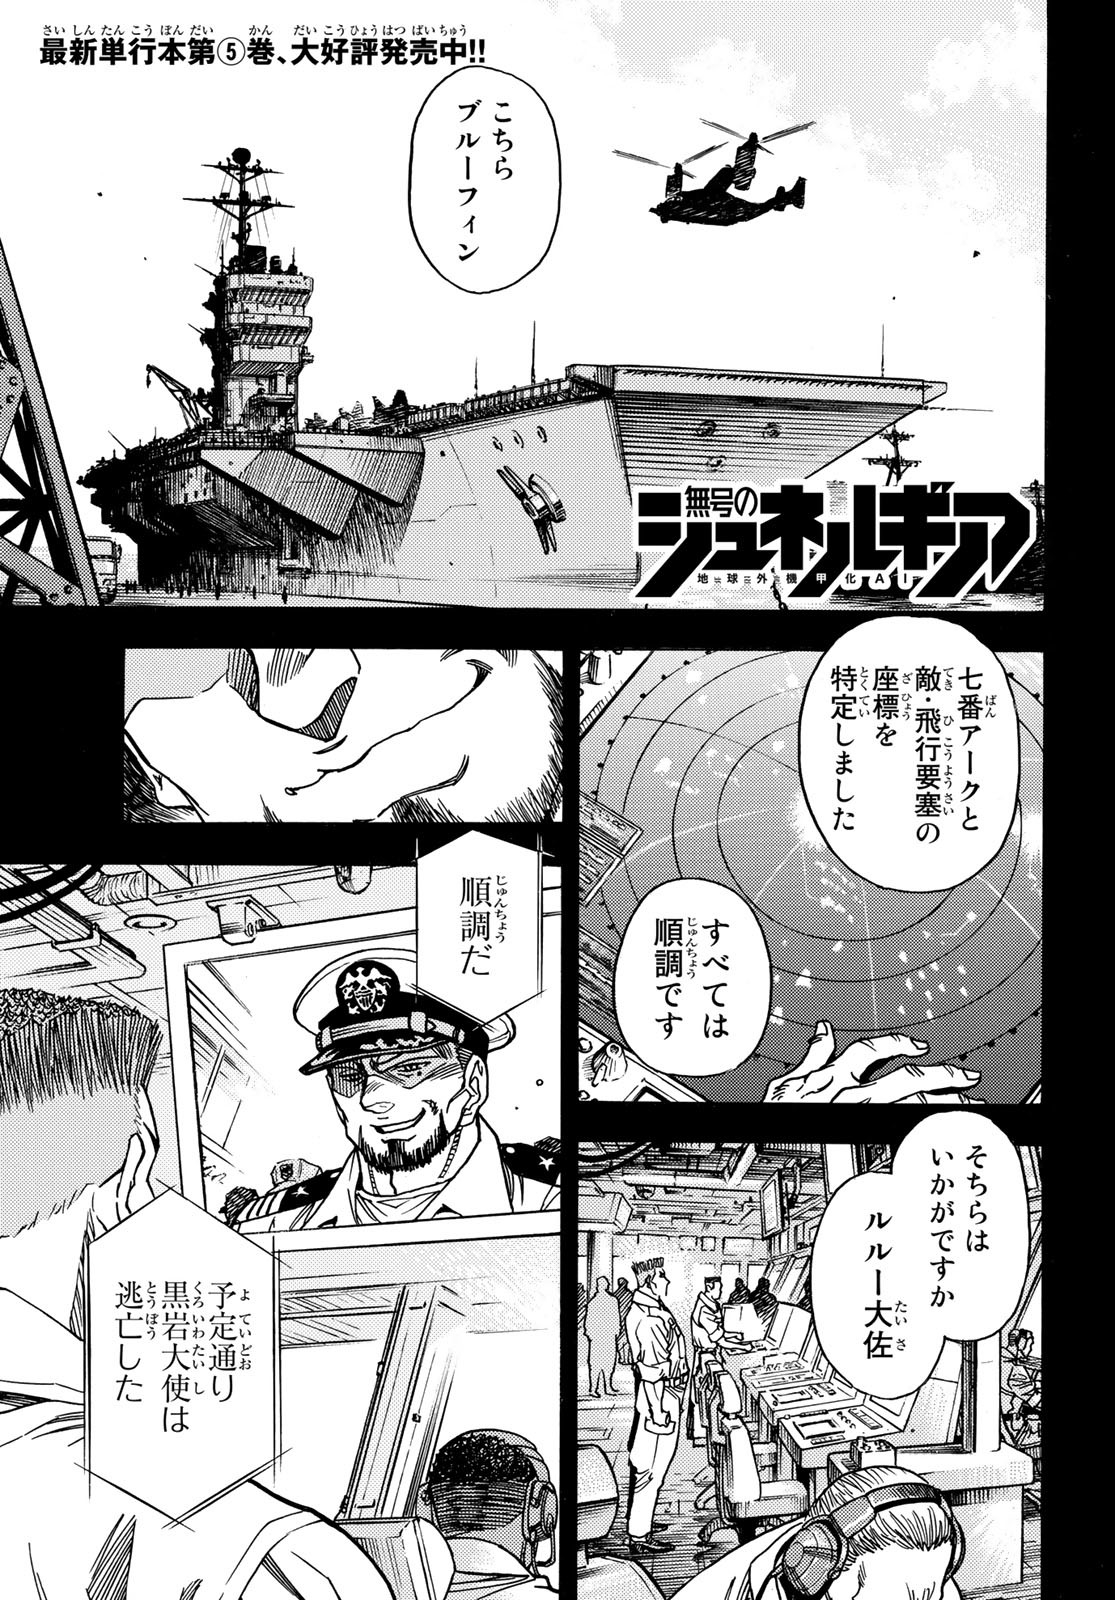 Mugou no Schnell Gear: Chikyuugai Kisouka AI - Chapter 36 - Page 1